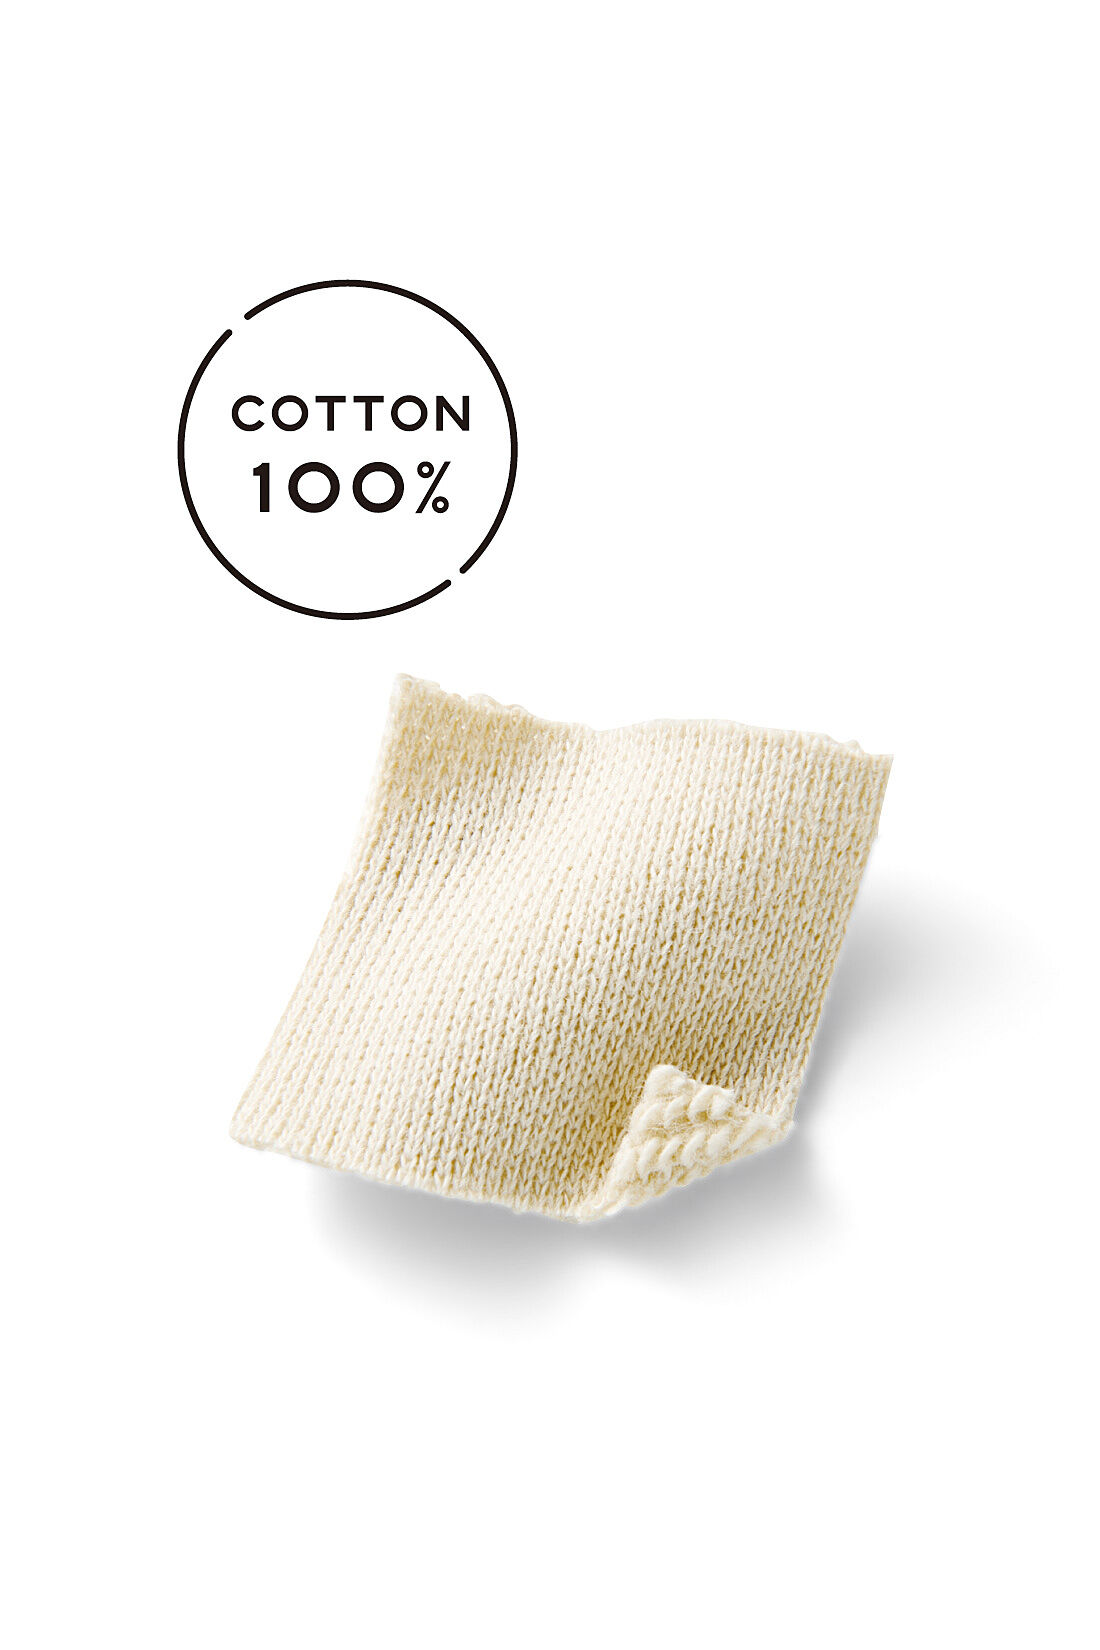 Live in  comfort|Live love cotton（R）プロジェクト　リブ イン コンフォート　上品カジュアルをつくる　ヴィレッジロゴフーディー〈ベージュ〉|肌ざわりのよいオーガニックコットン100%の裏毛素材。重ね着もしやすい、ほどよい厚みです。